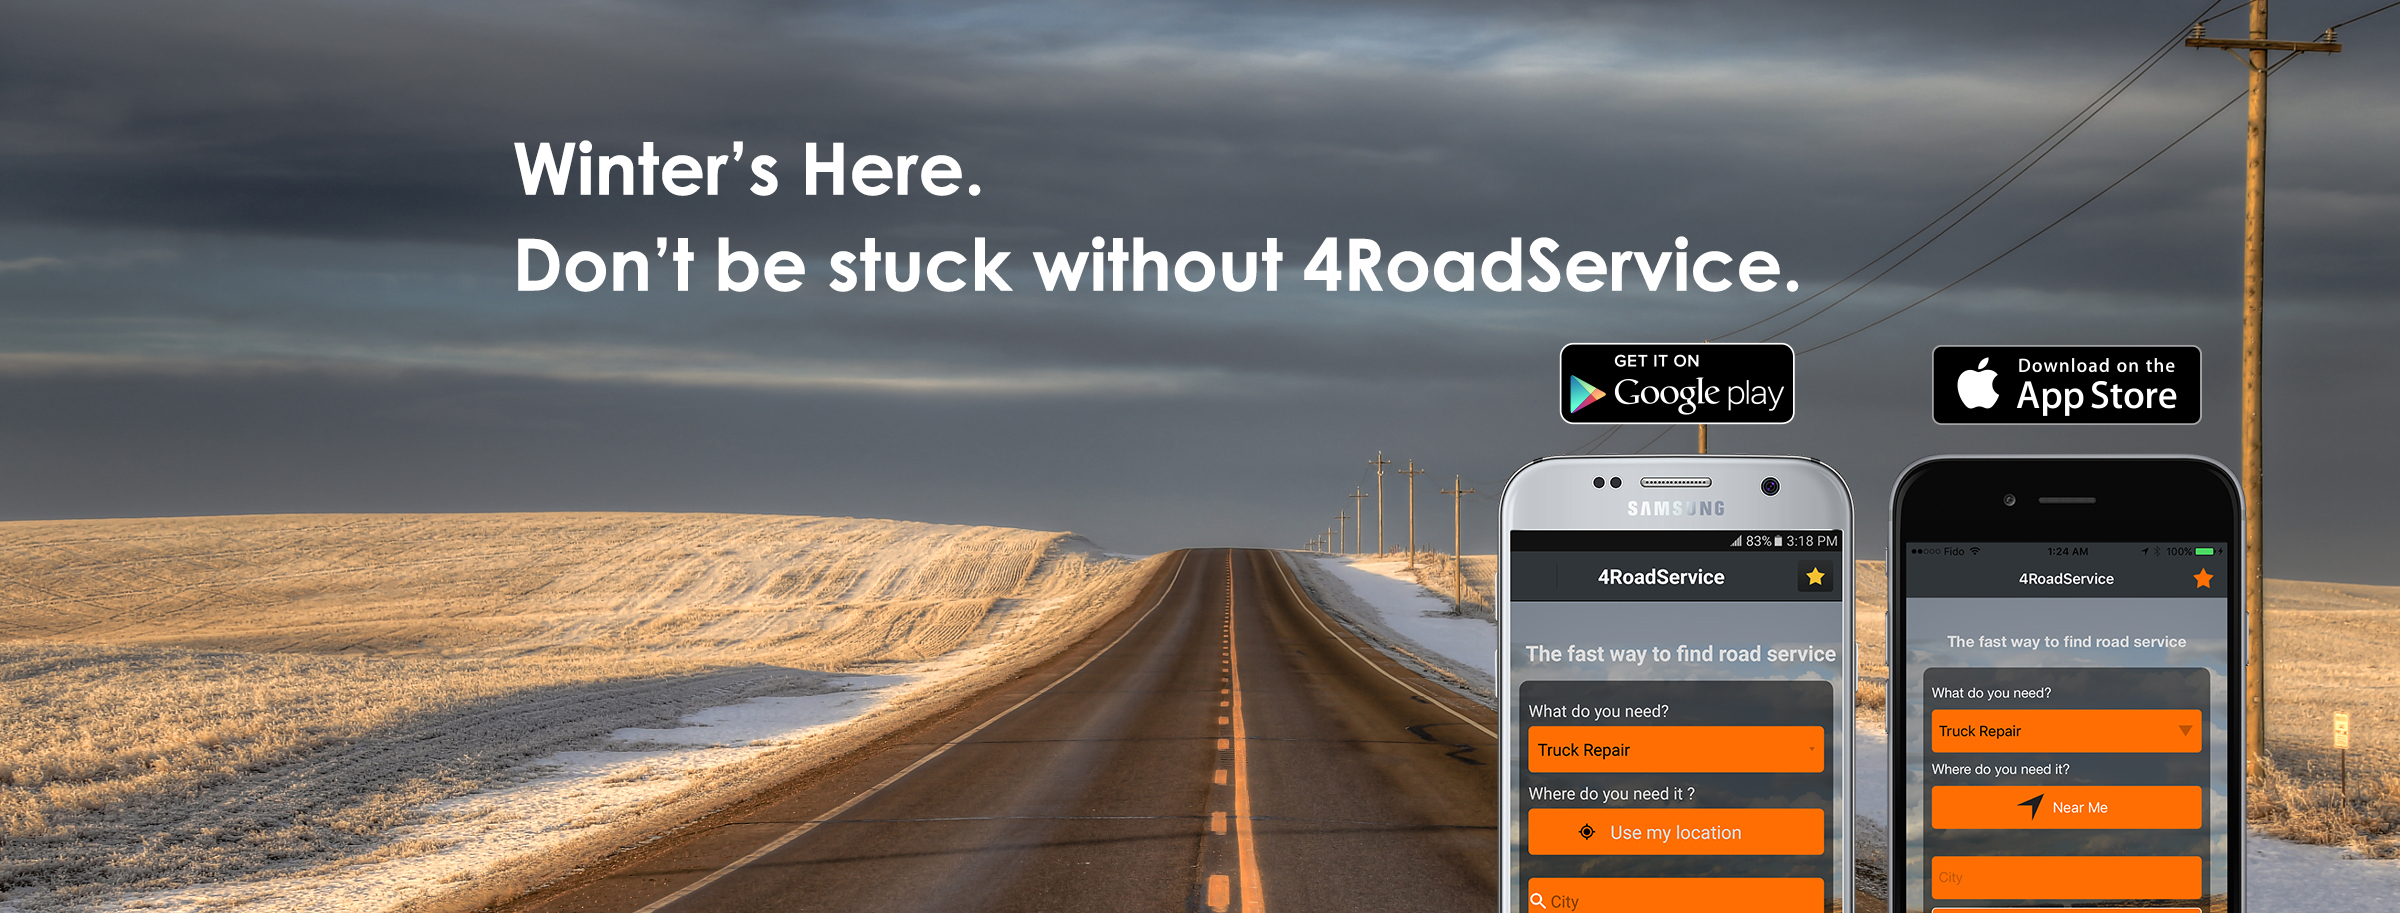 4RoadService Truck Repair App Winter 2017 Promo Image